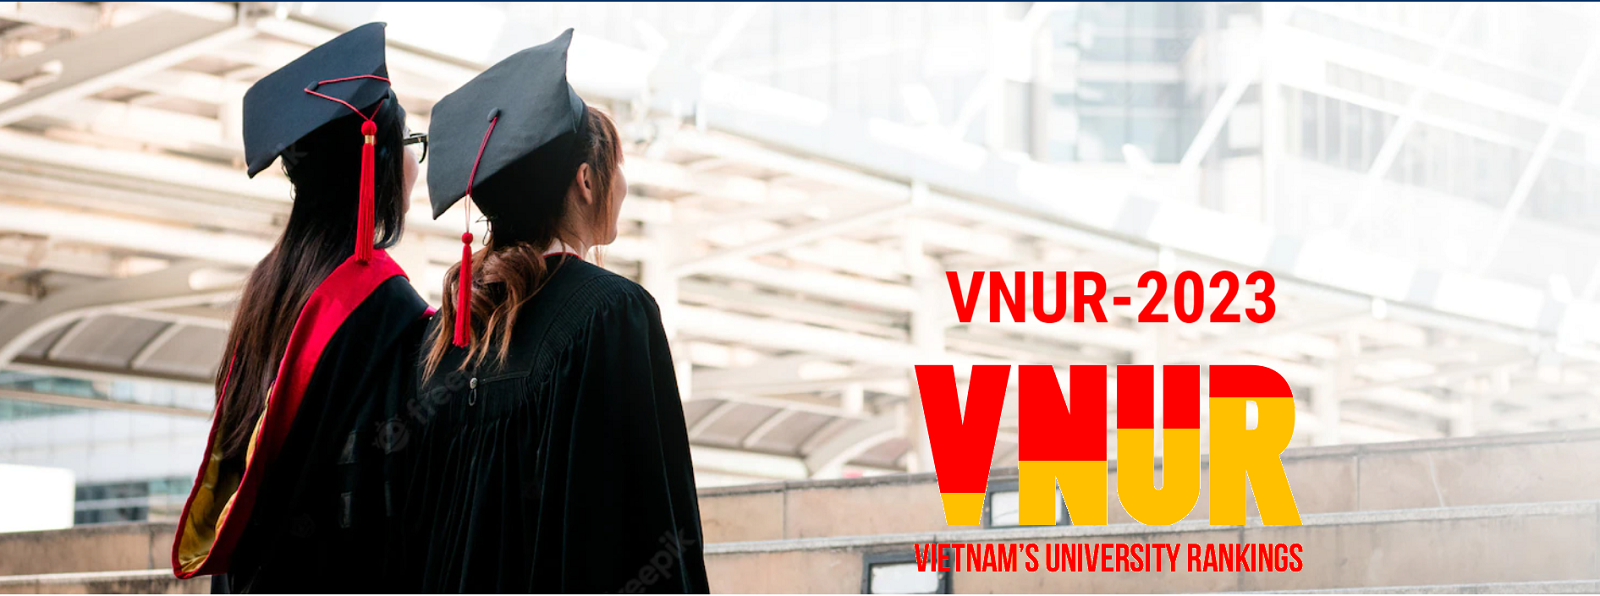 Tính khách quan của bảng xếp hạng đại học VNUR-2023 ảnh 1